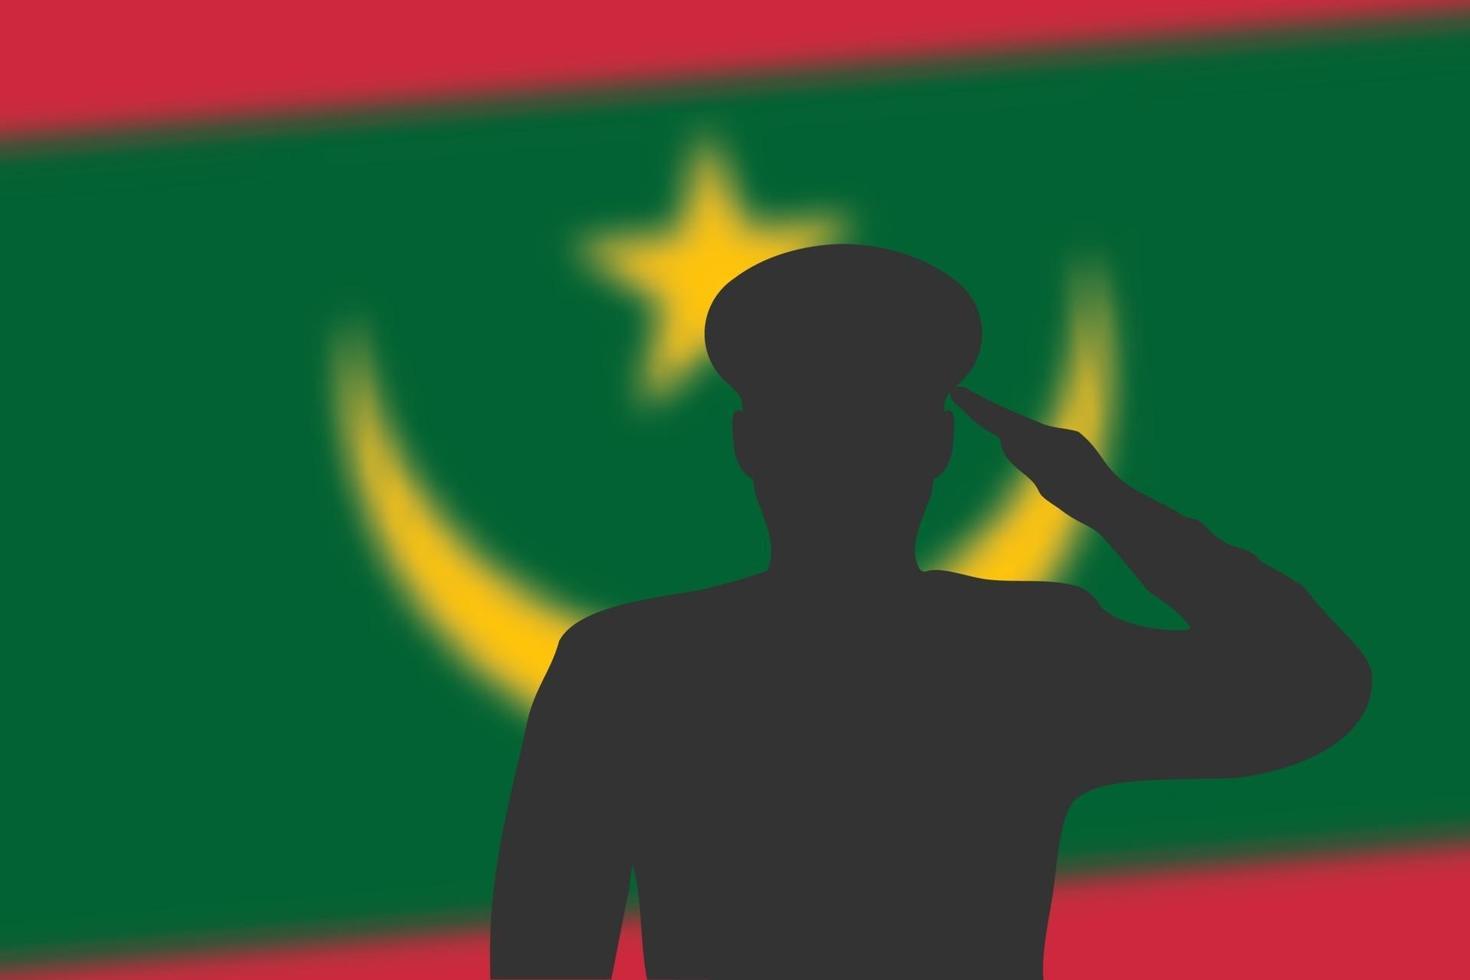 silueta de soldadura sobre fondo borroso con la bandera de mauritania. vector